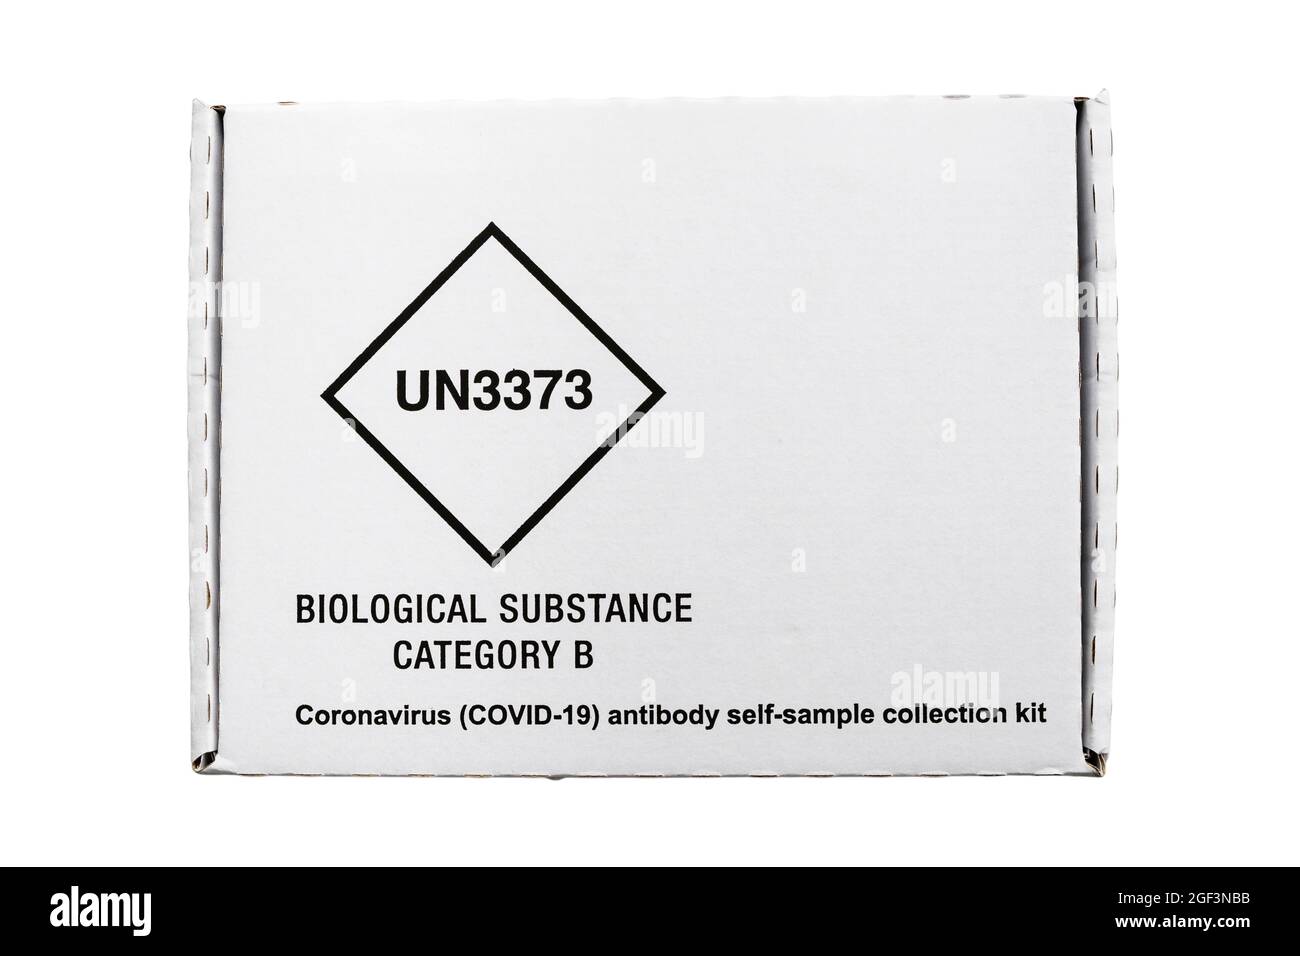 Boîte de kit de prélèvement automatique d'anticorps contre le coronavirus COVID-19 isolée sur un fond transparent pour le test des anticorps dans le sang. Angleterre Royaume-Uni Grande-Bretagne Banque D'Images